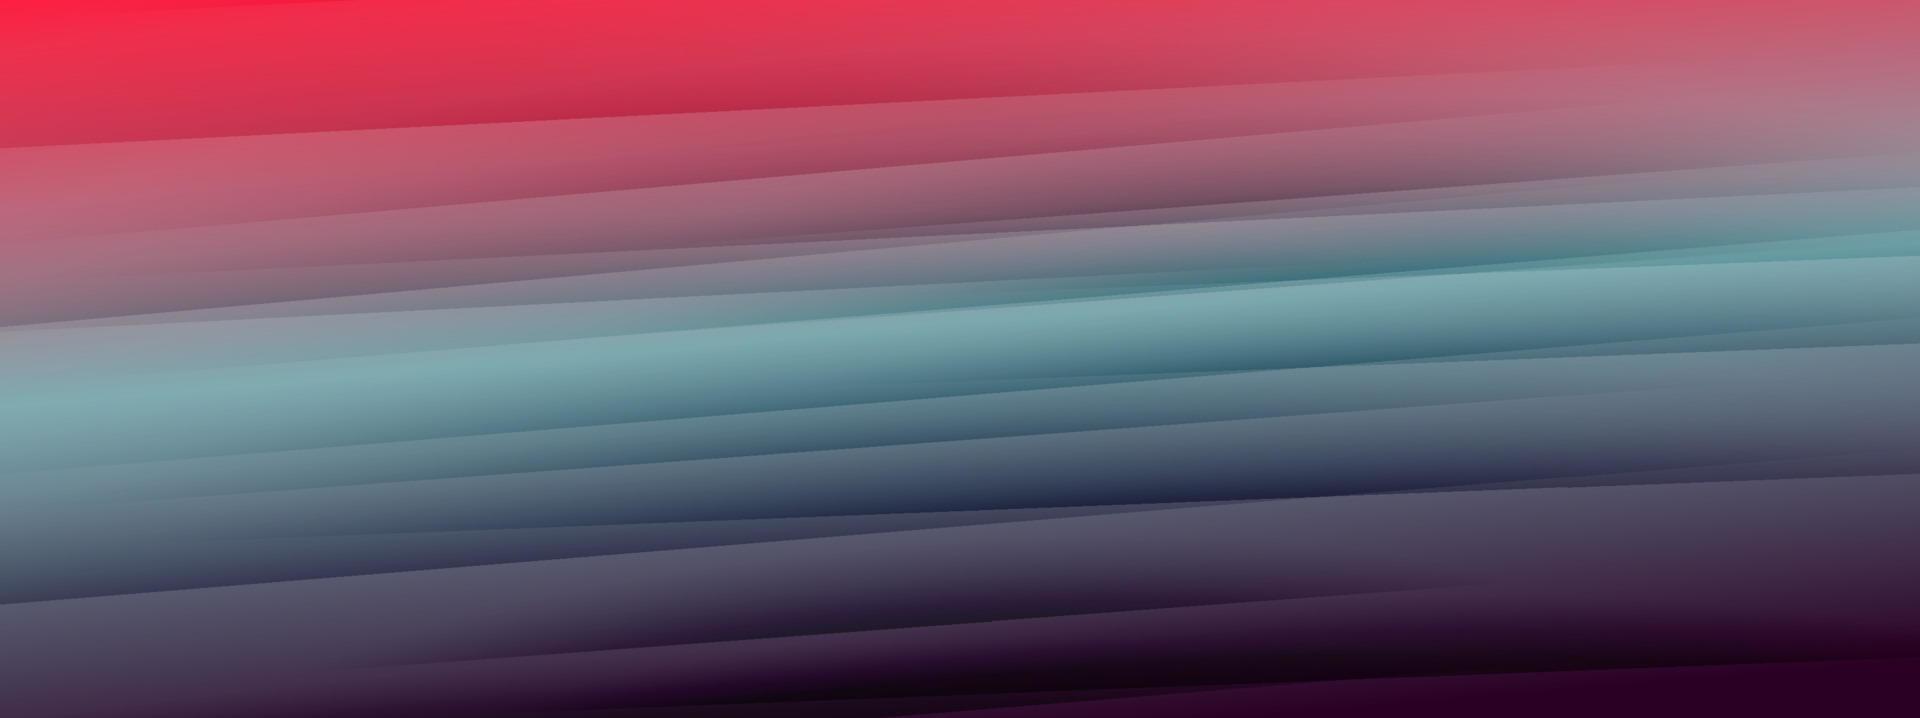 papier multicolore abstrait avec vecteur de fond d'ombre